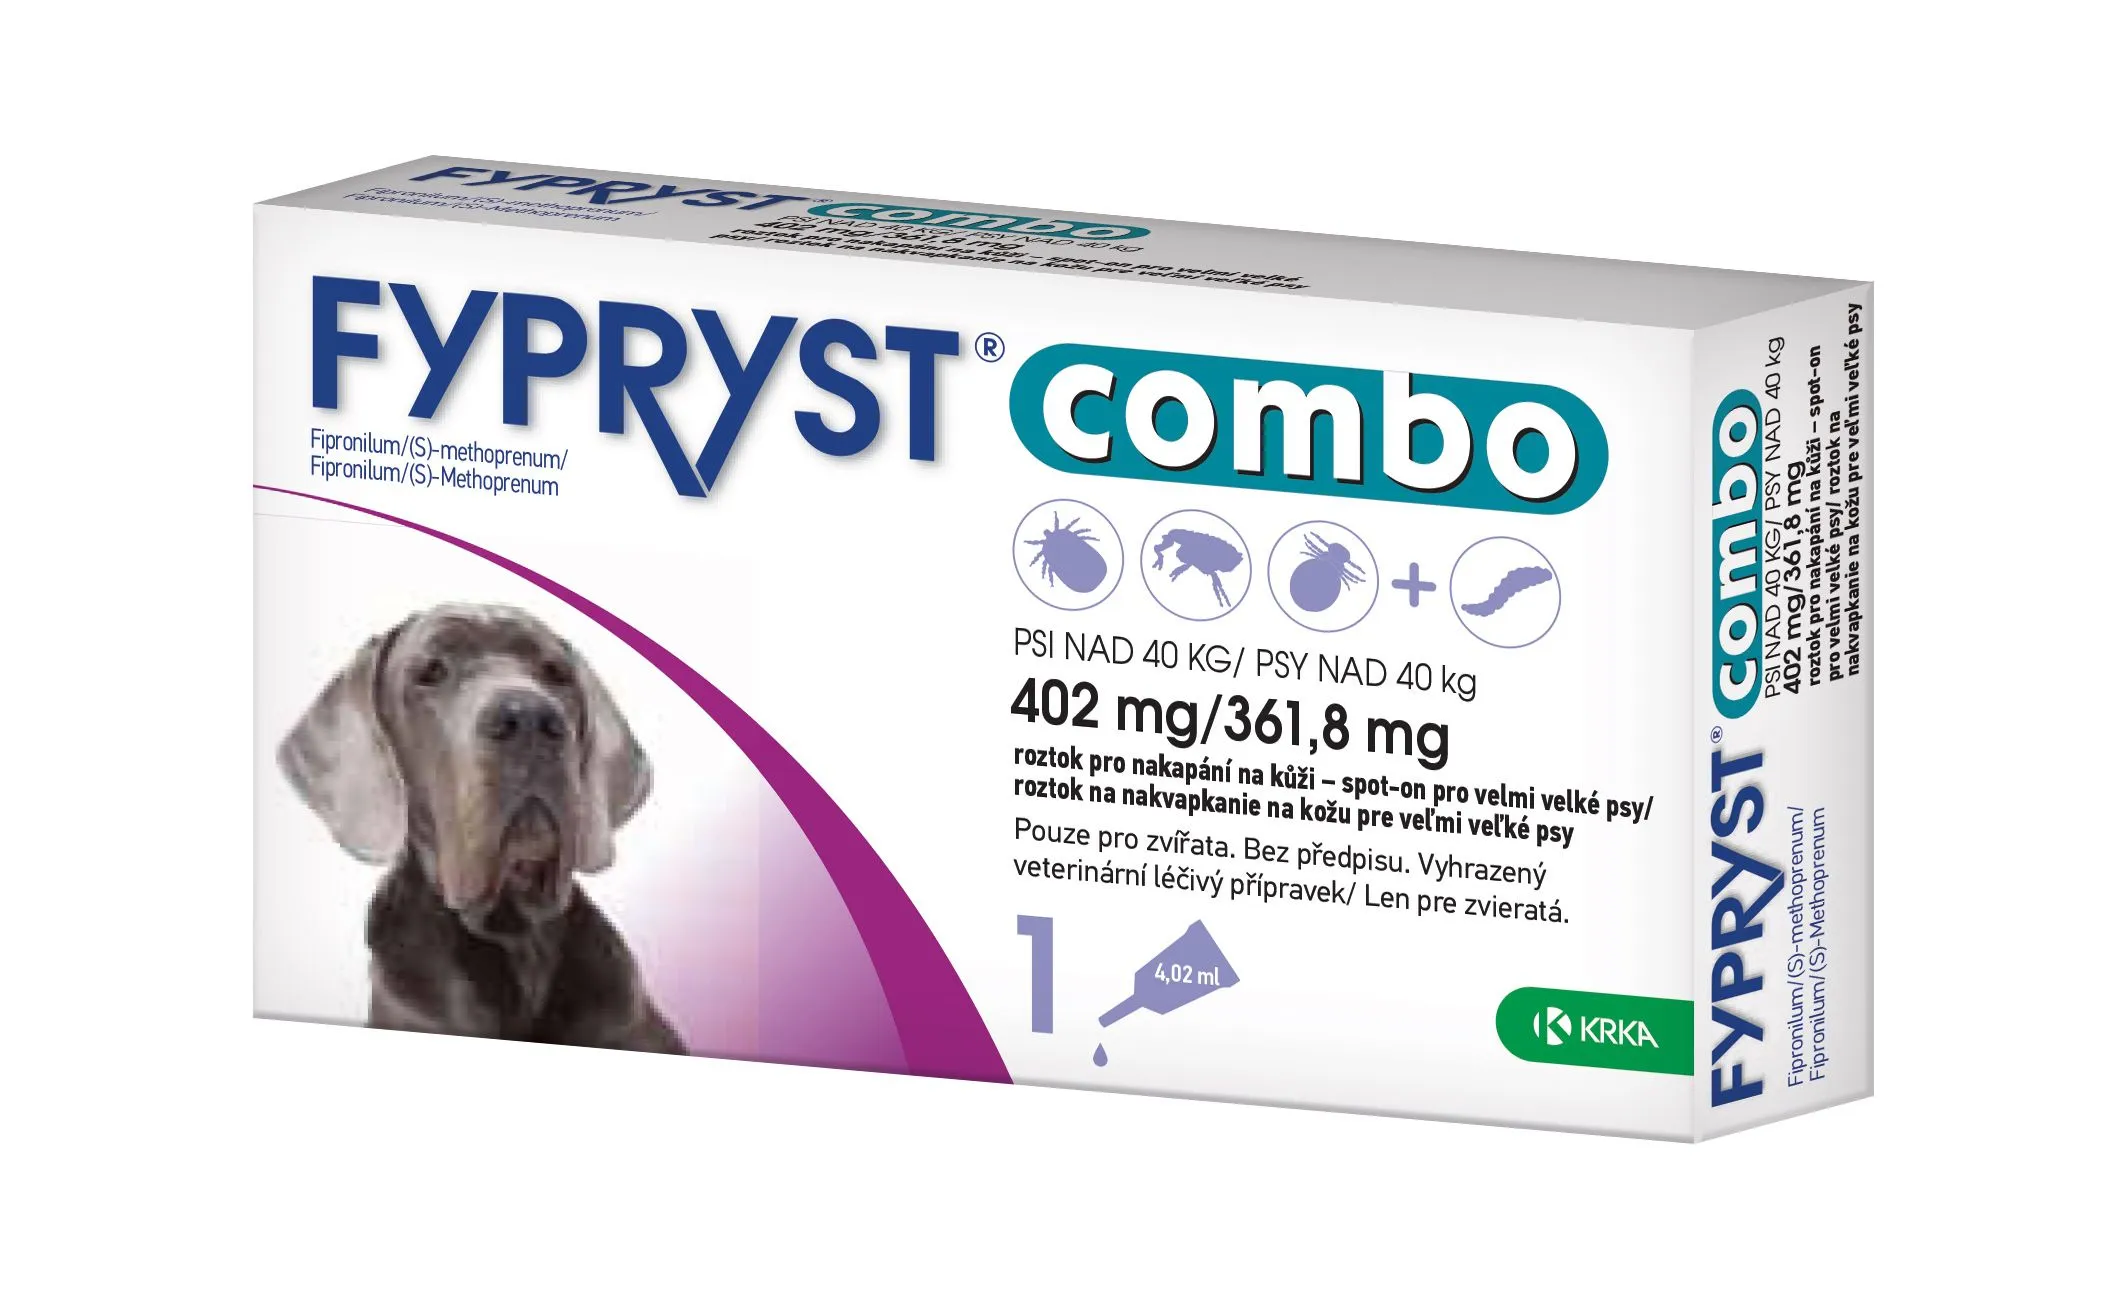 Fypryst Combo spot-on pro velmi velké psy nad 40 kg 402 mg/361,8 mg